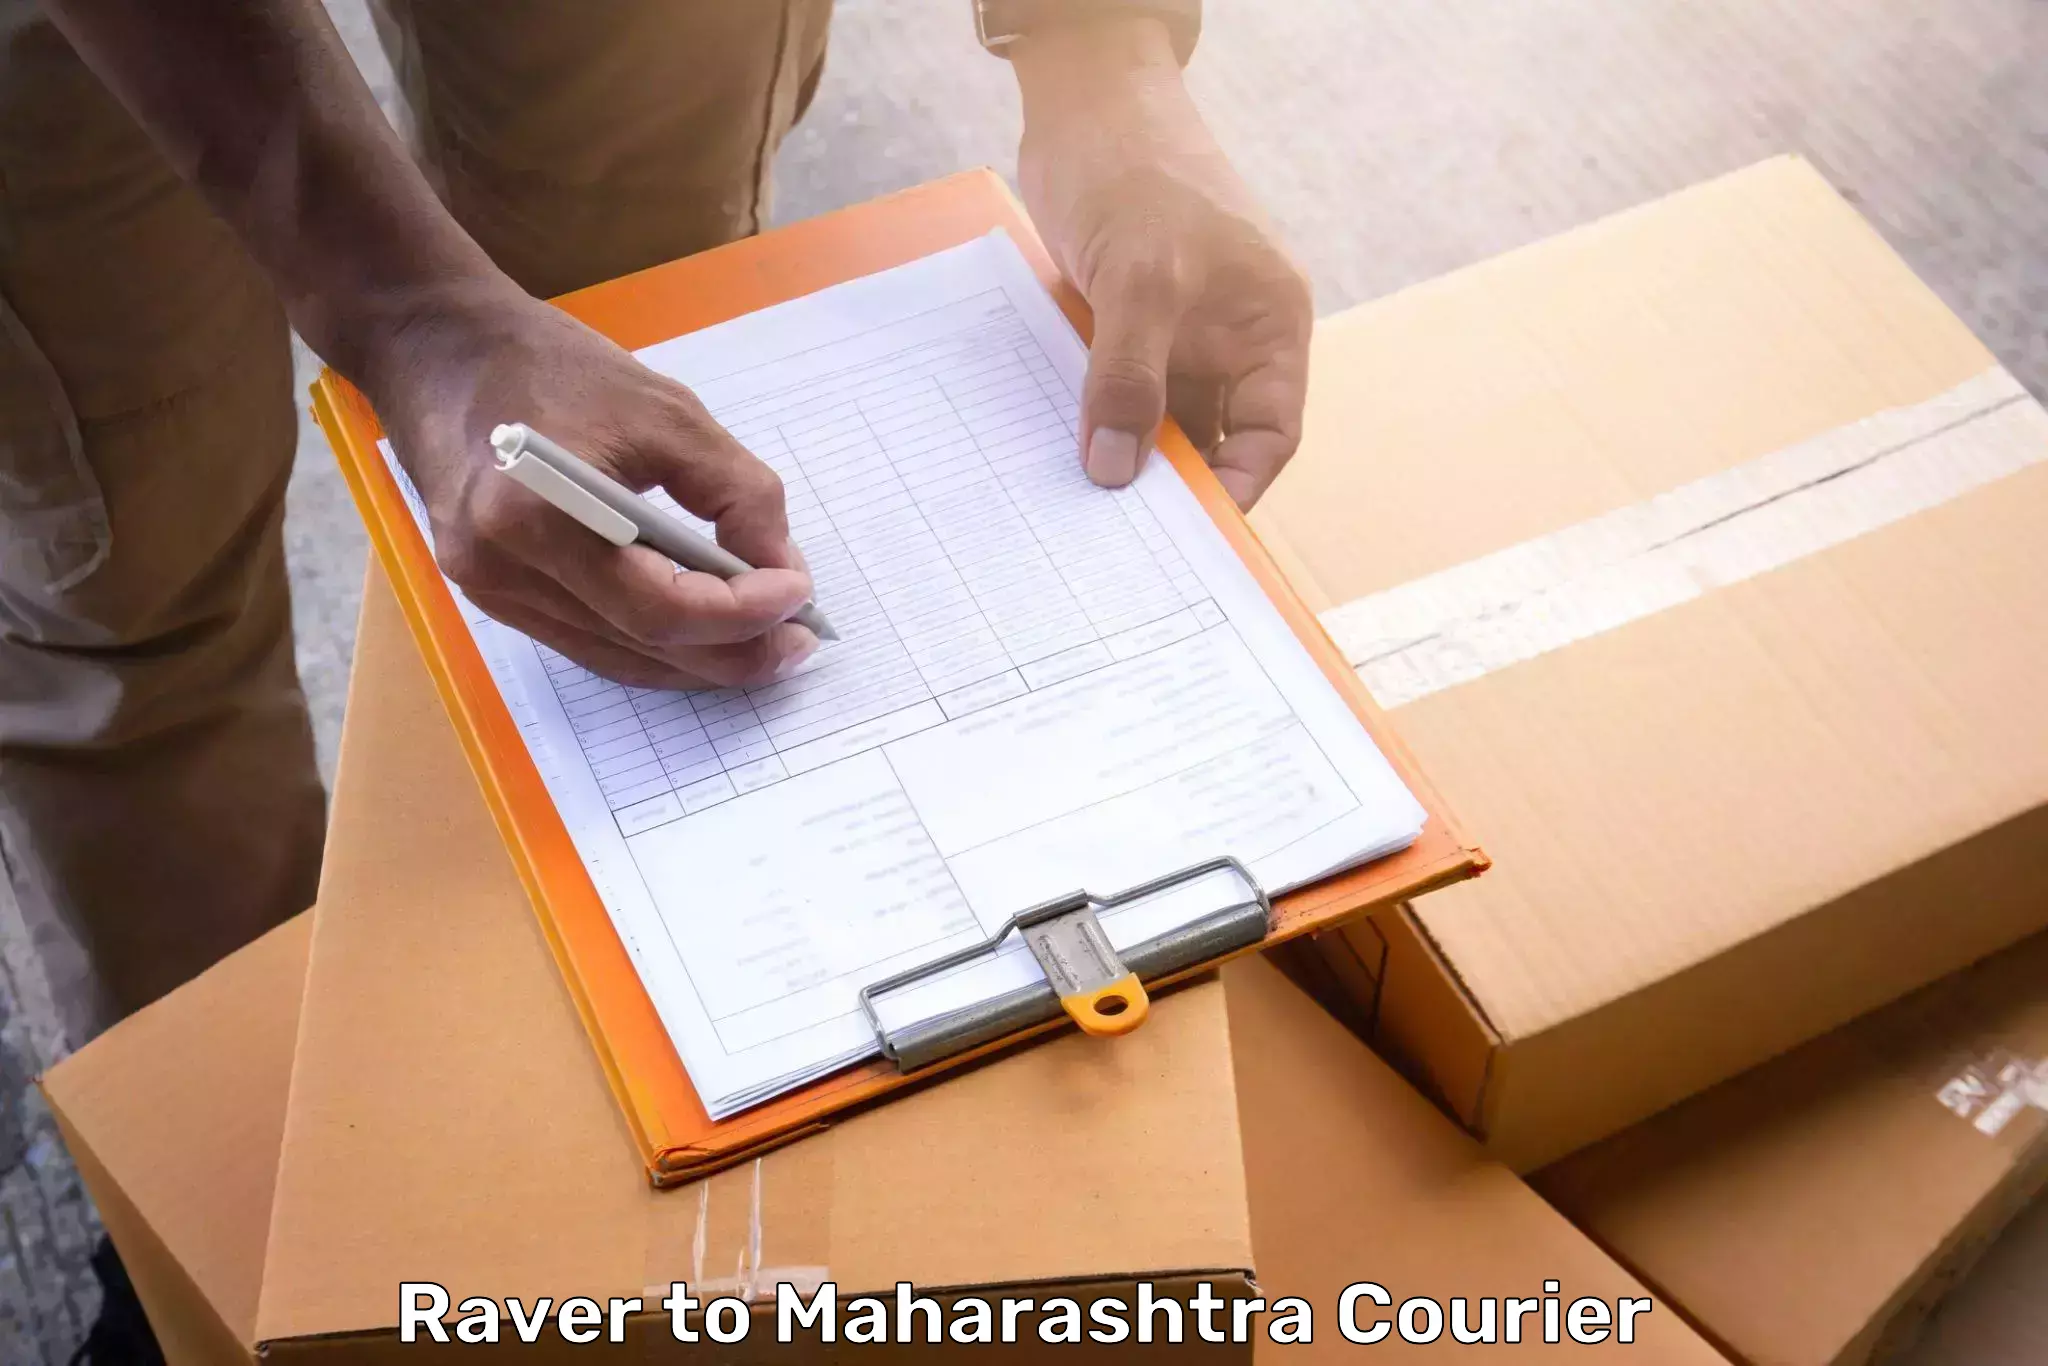 Luggage shipment tracking in Raver to Maharashtra